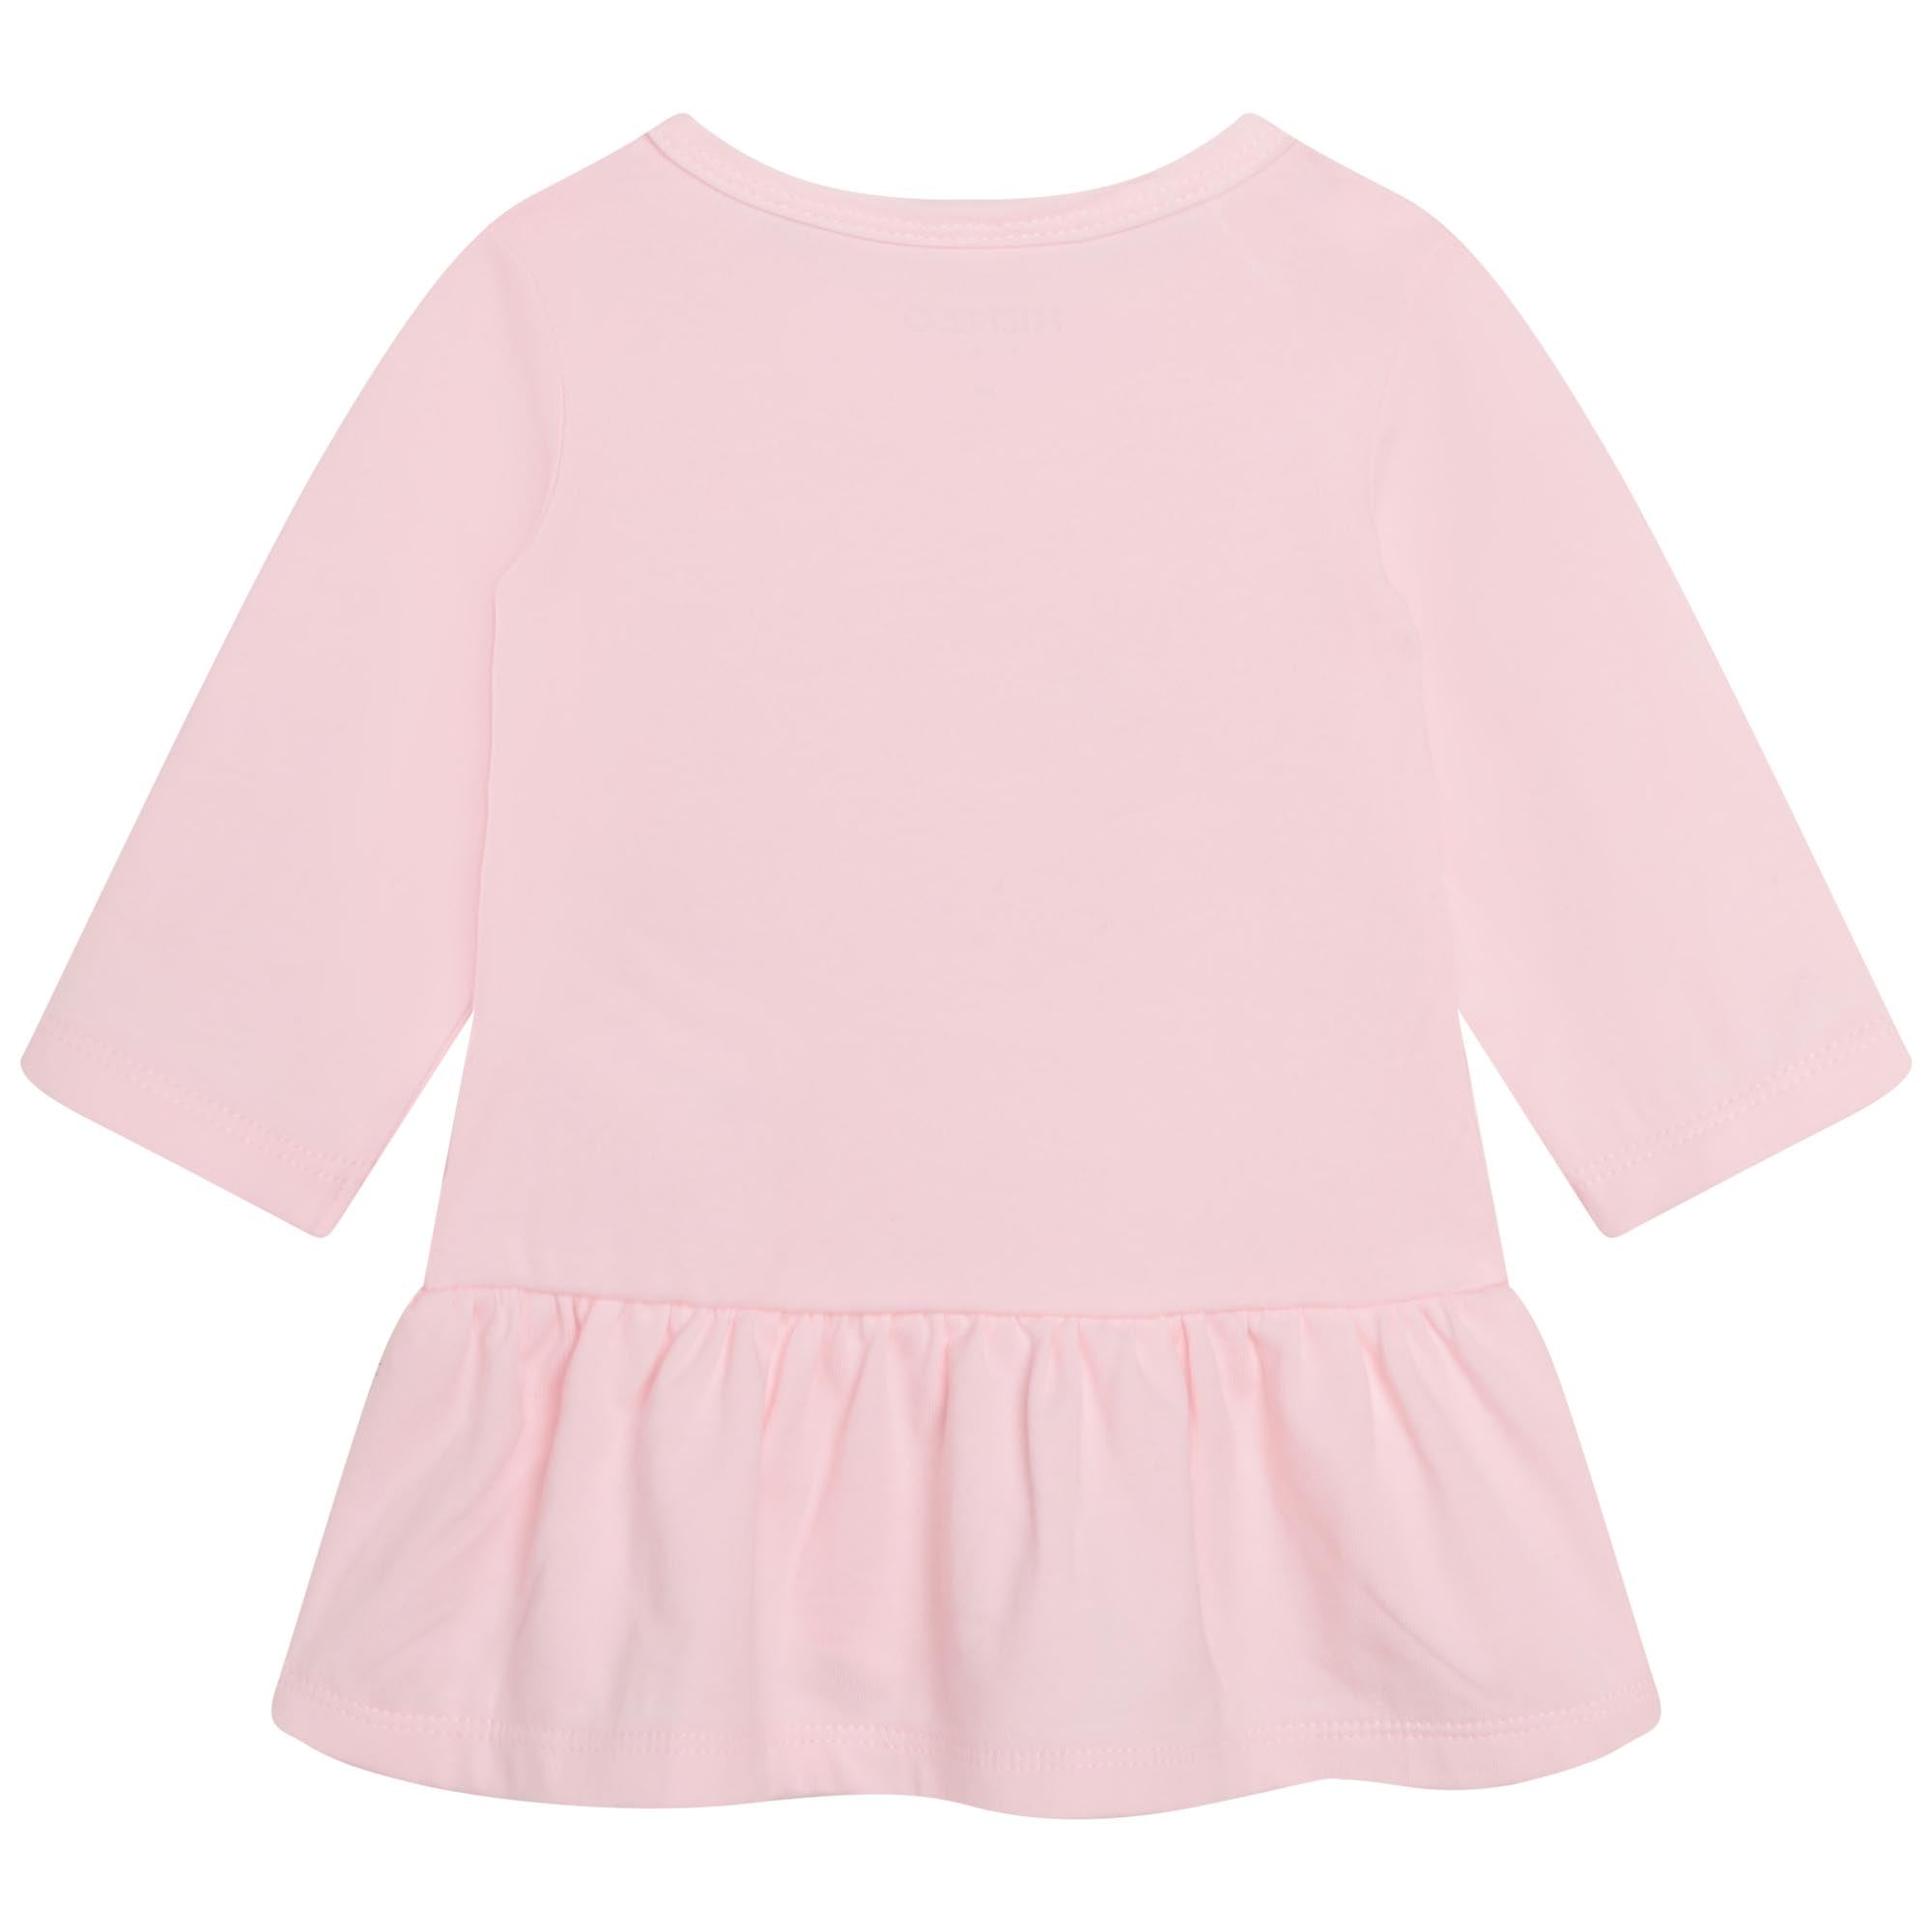 Baby Girls Pink Printed Dress